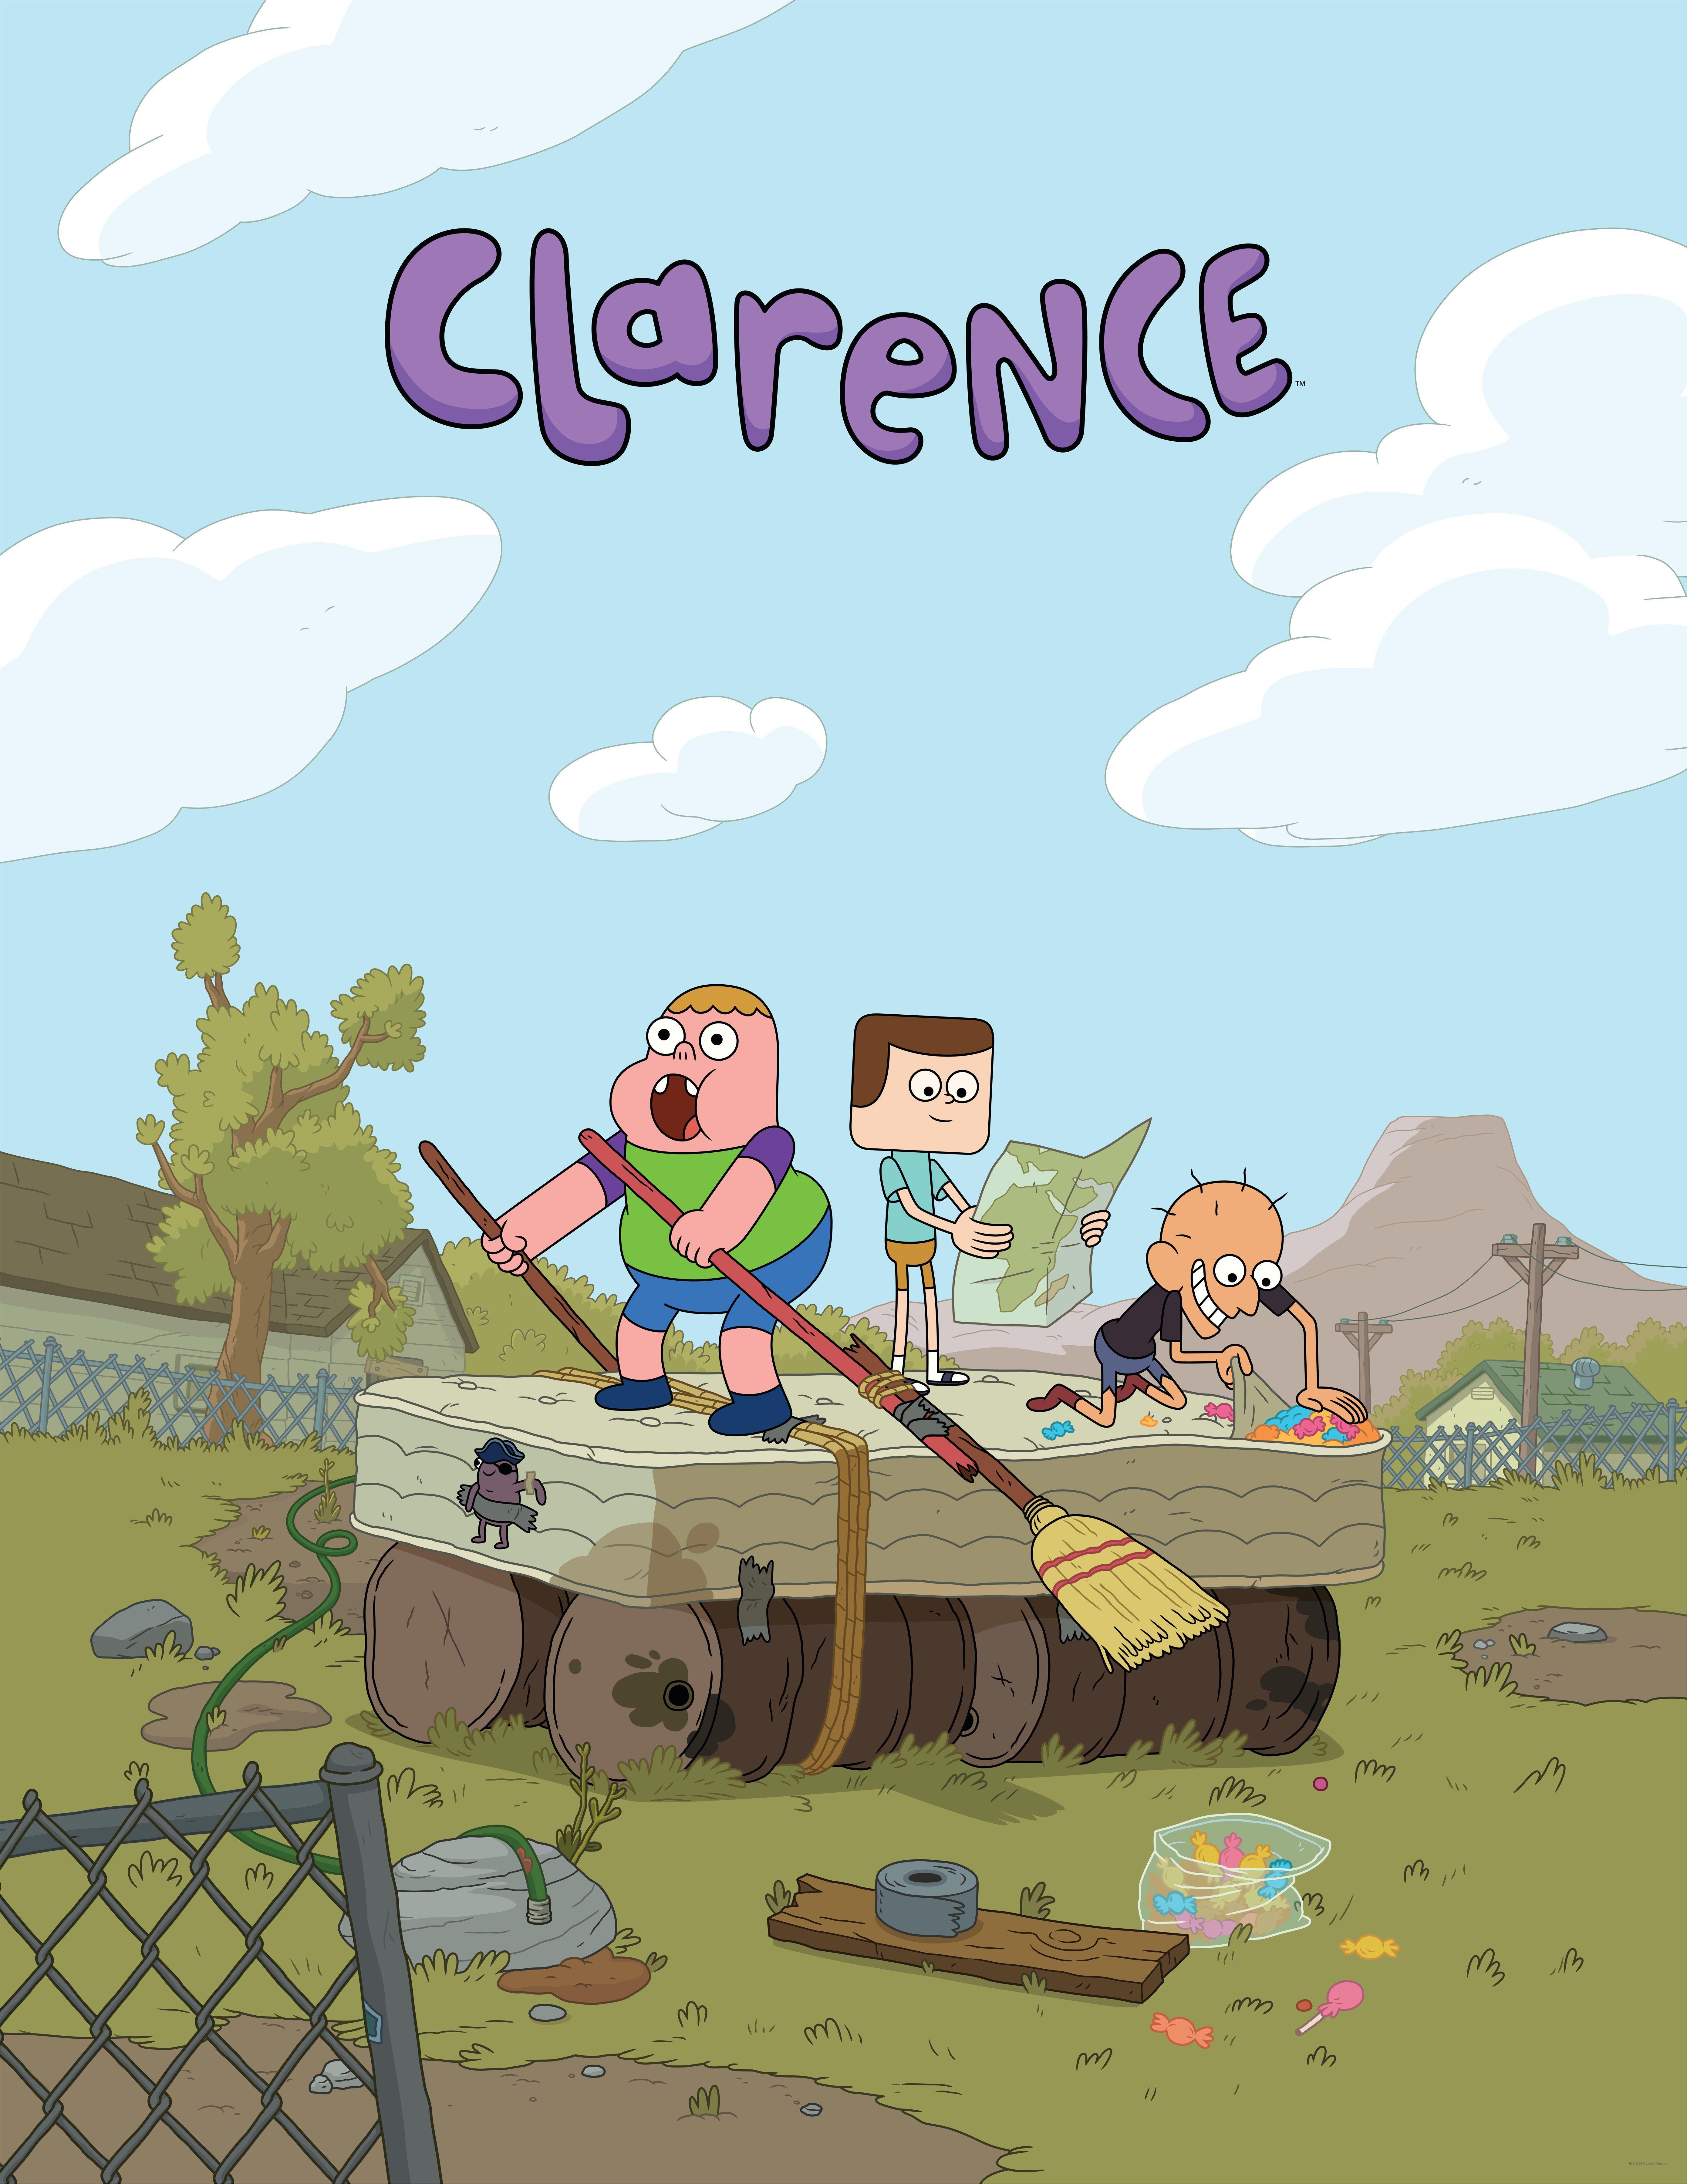 Clarence Cartoon Wallpapers  Top Free Clarence Cartoon Backgrounds   WallpaperAccess